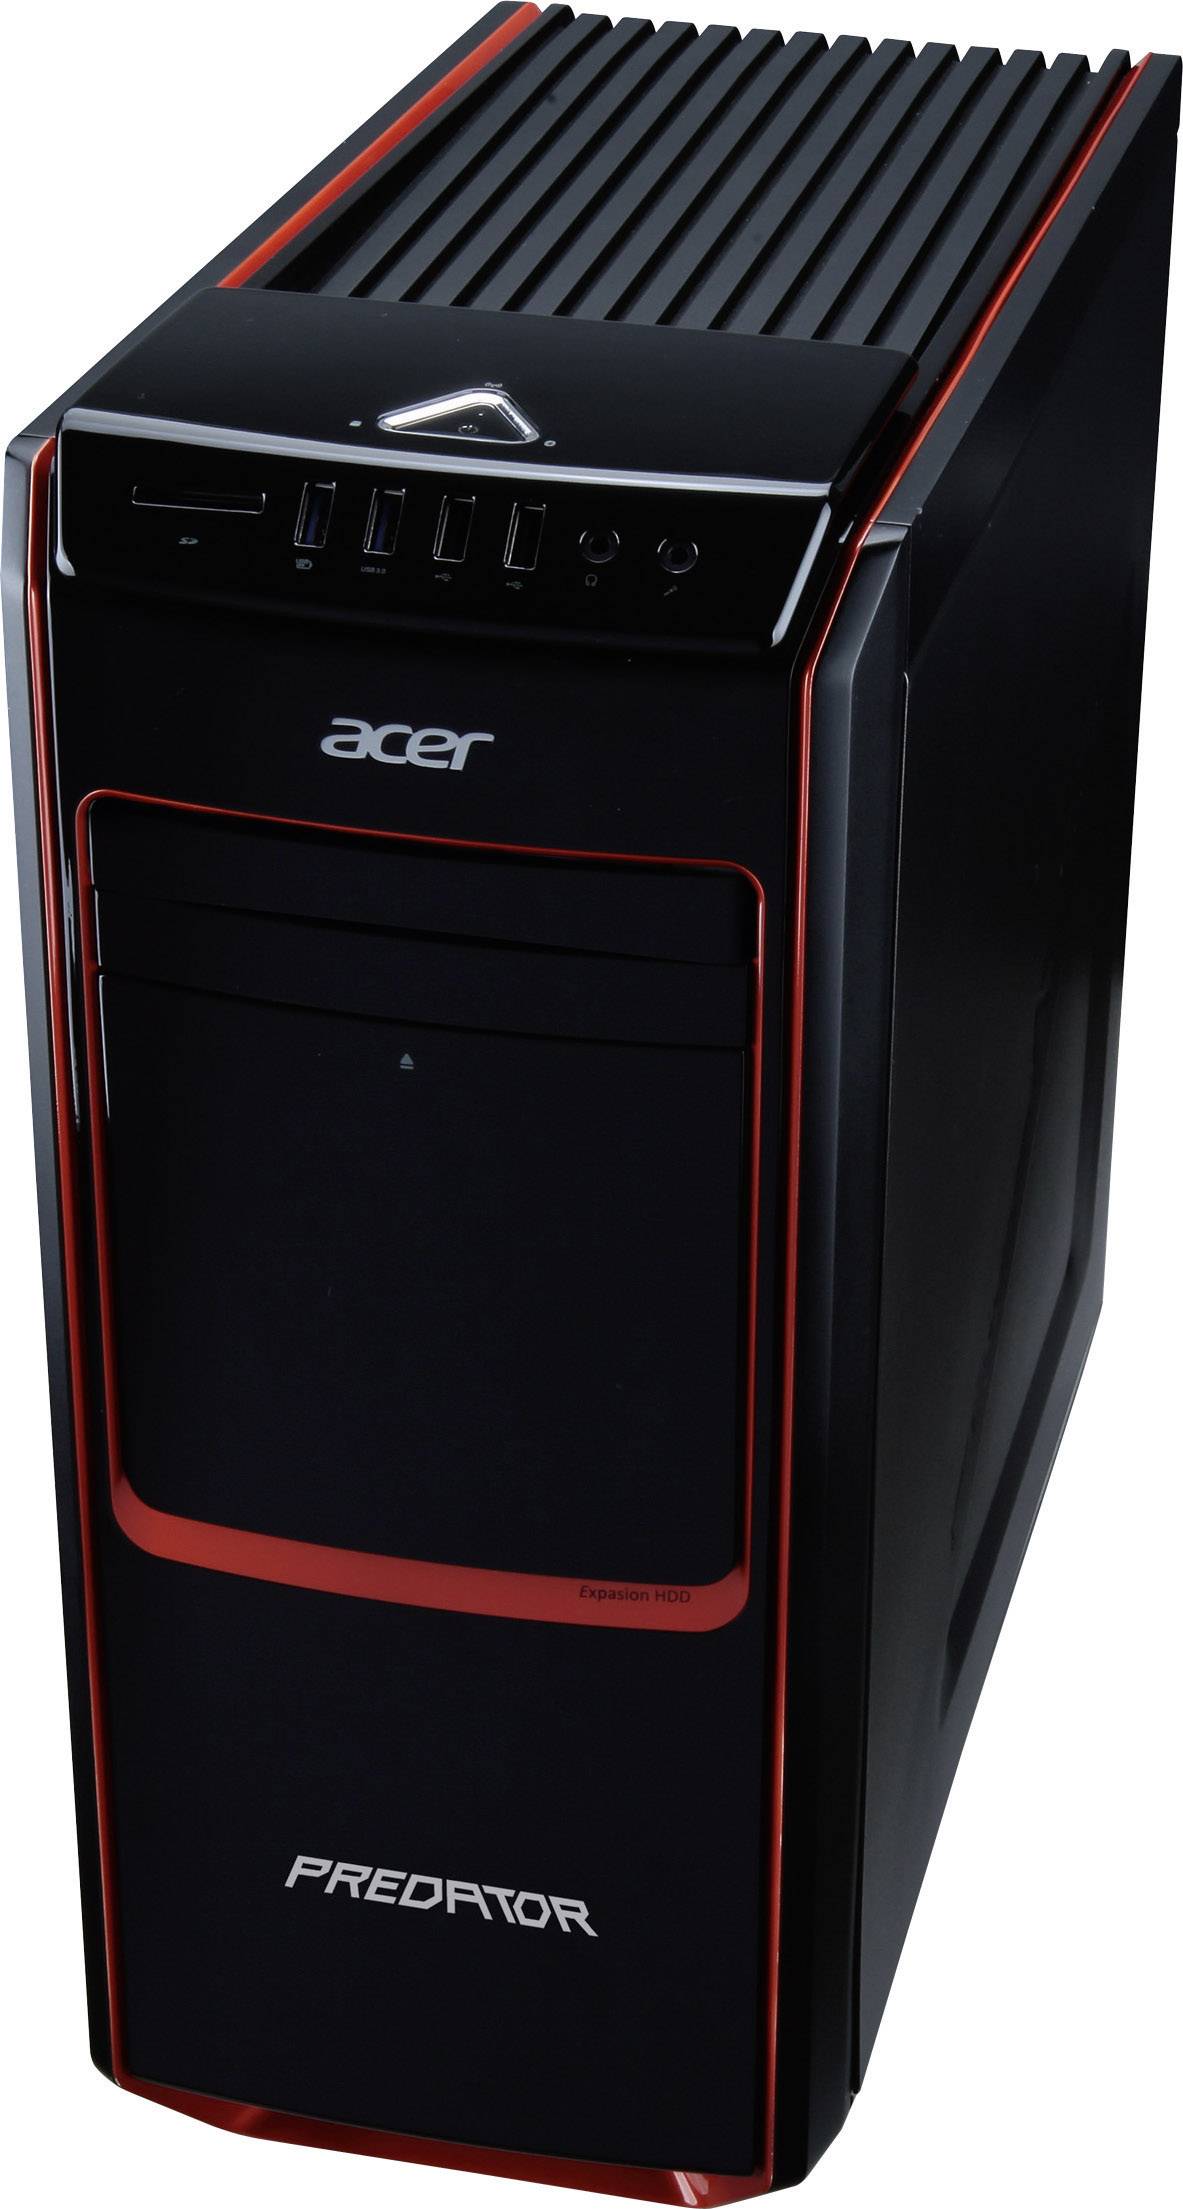 Acer Predator системный блок. Acer Predator g-Series. Acer Aspire Predator g7200. Acer Predator системник 2013. Predator systems